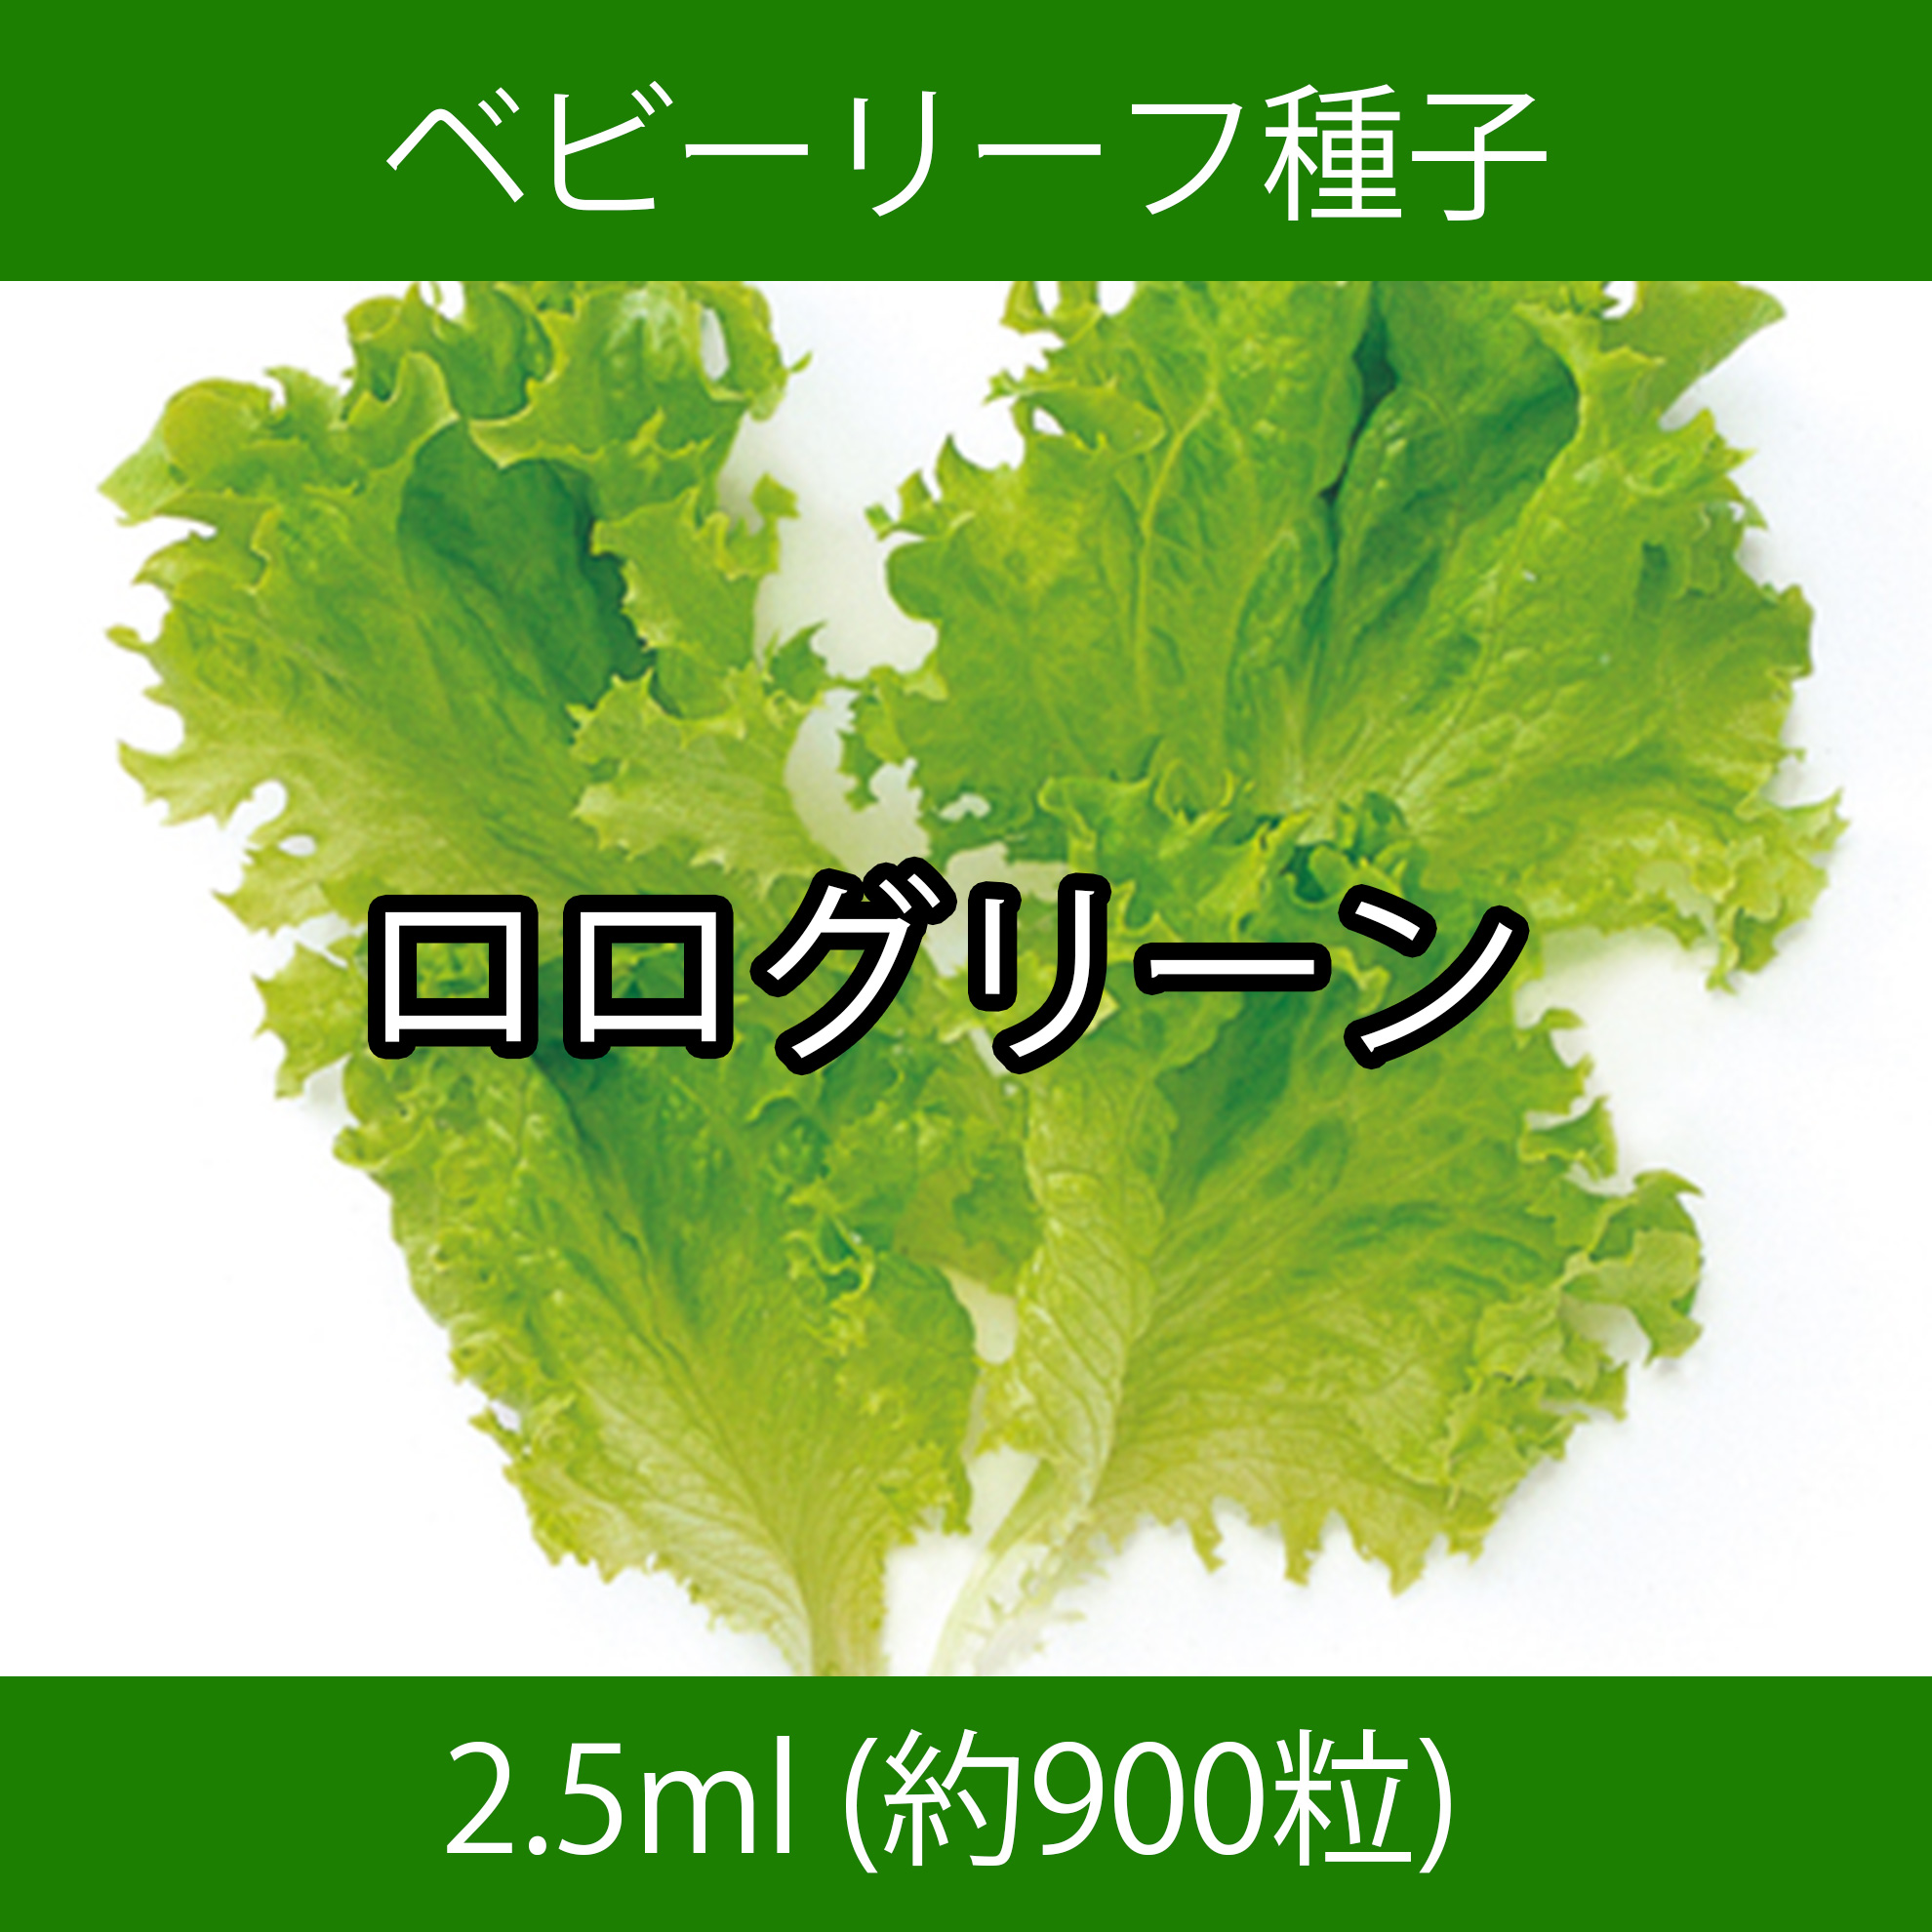 ベビーリーフ種子 B-09 ロログリーン 2.5ml